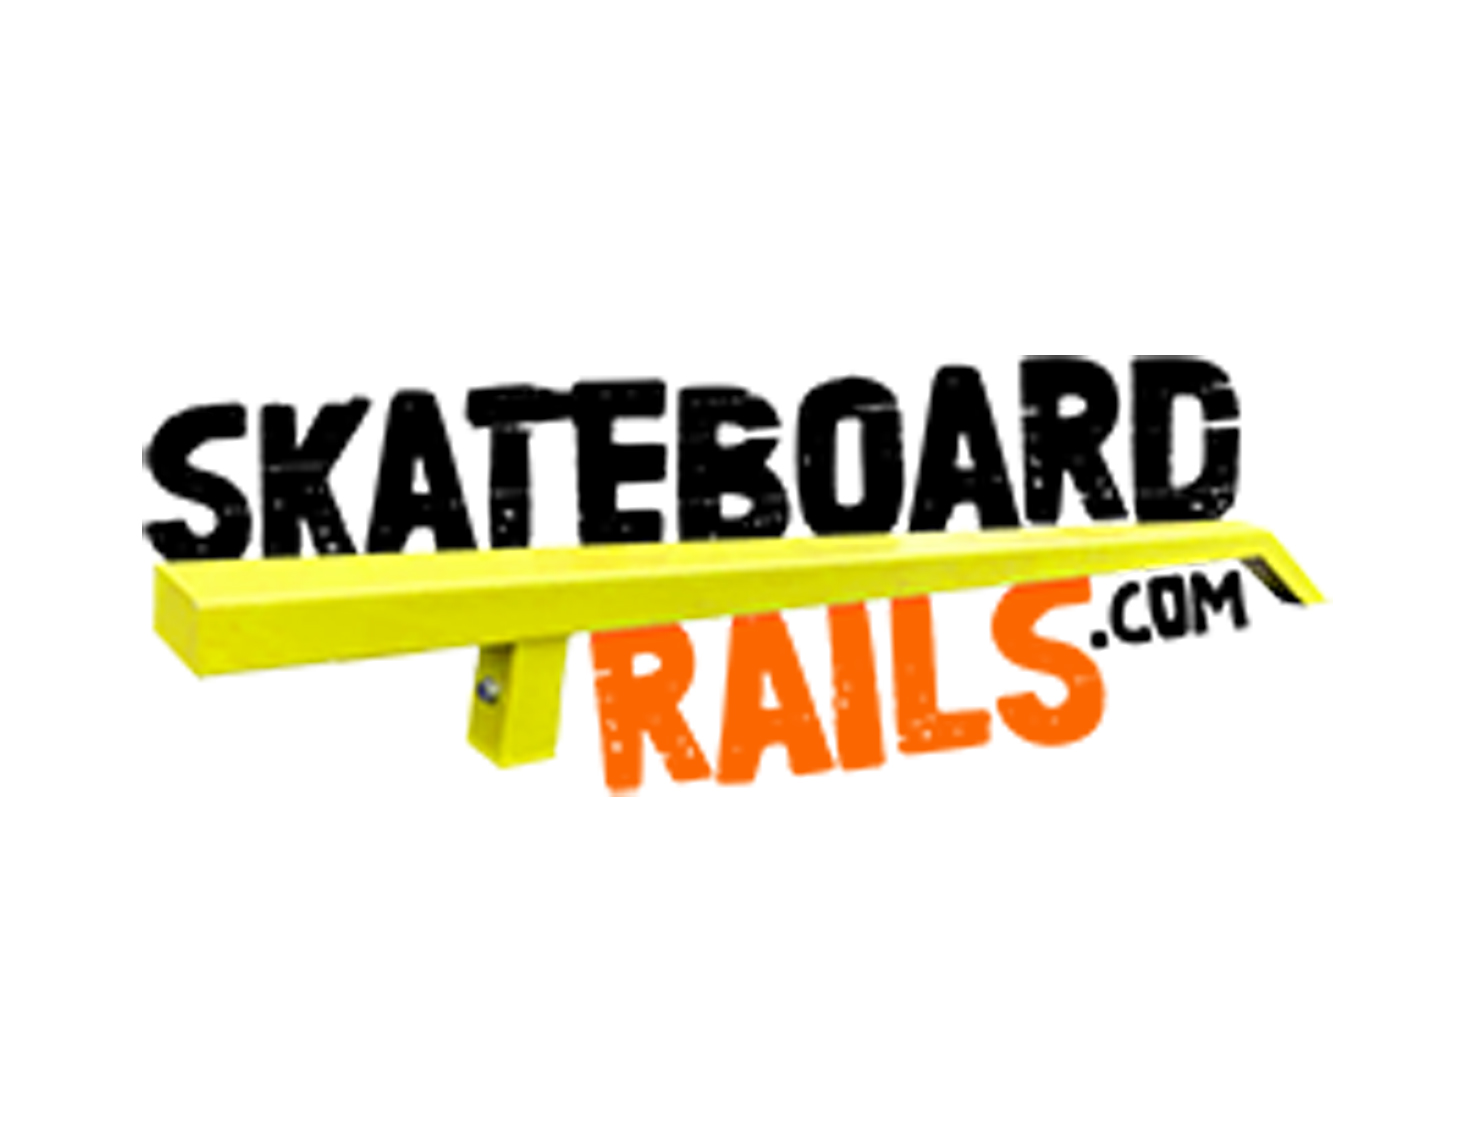 Skateboard Rails